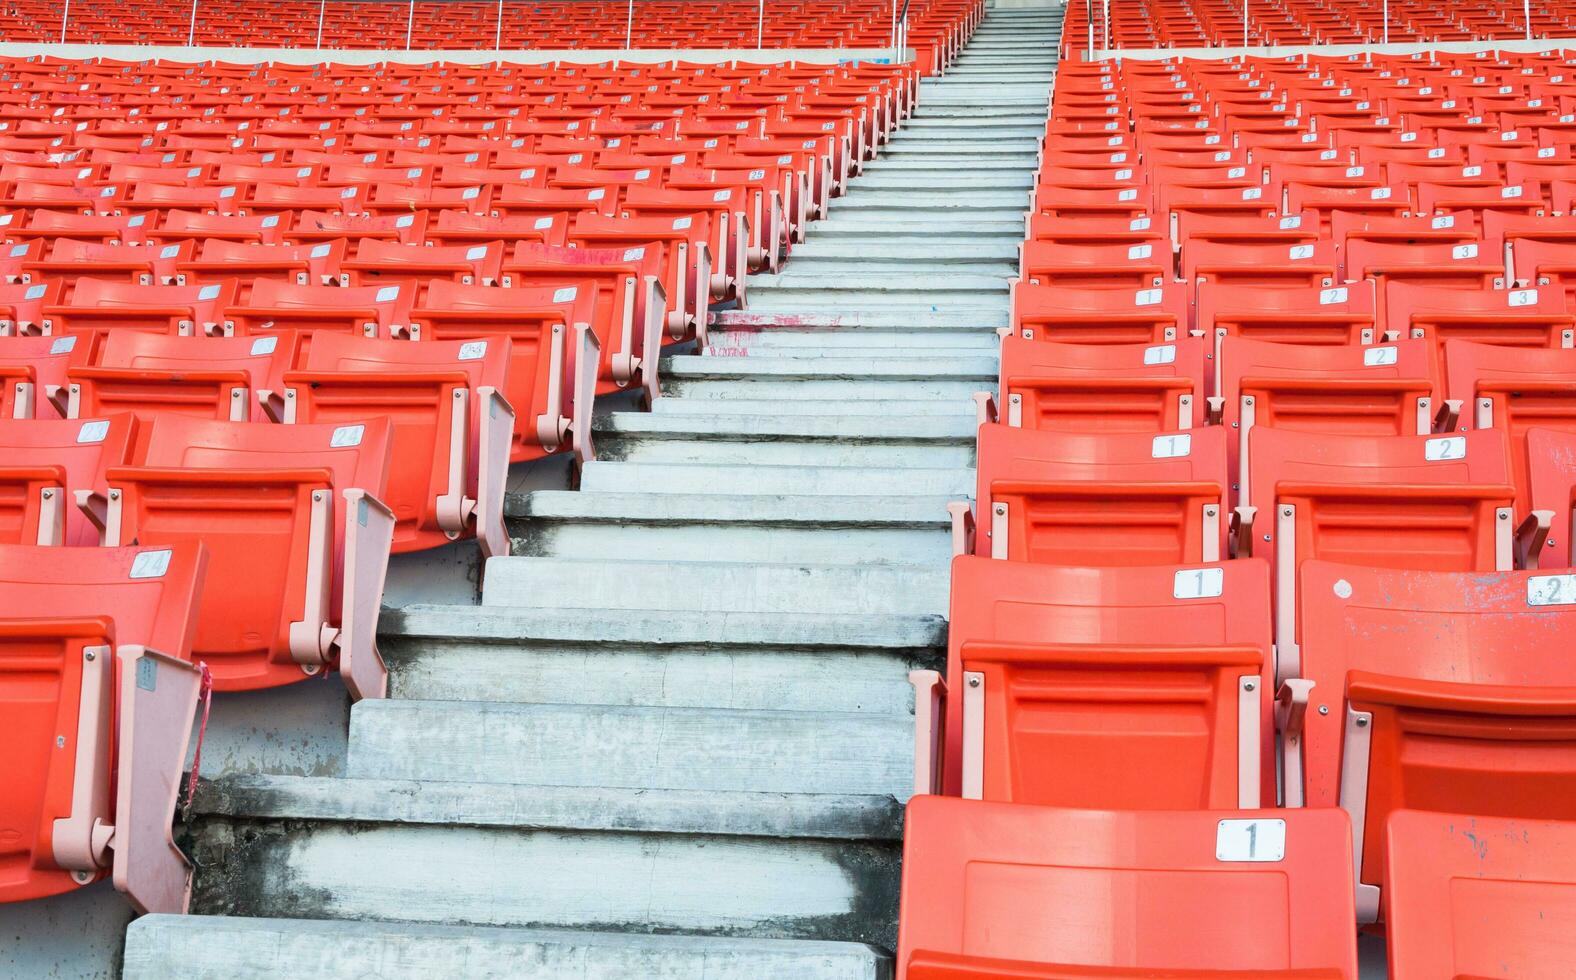 leeg oranje stoelen Bij stadion, rijen loopbrug van stoel Aan een voetbal stadion foto